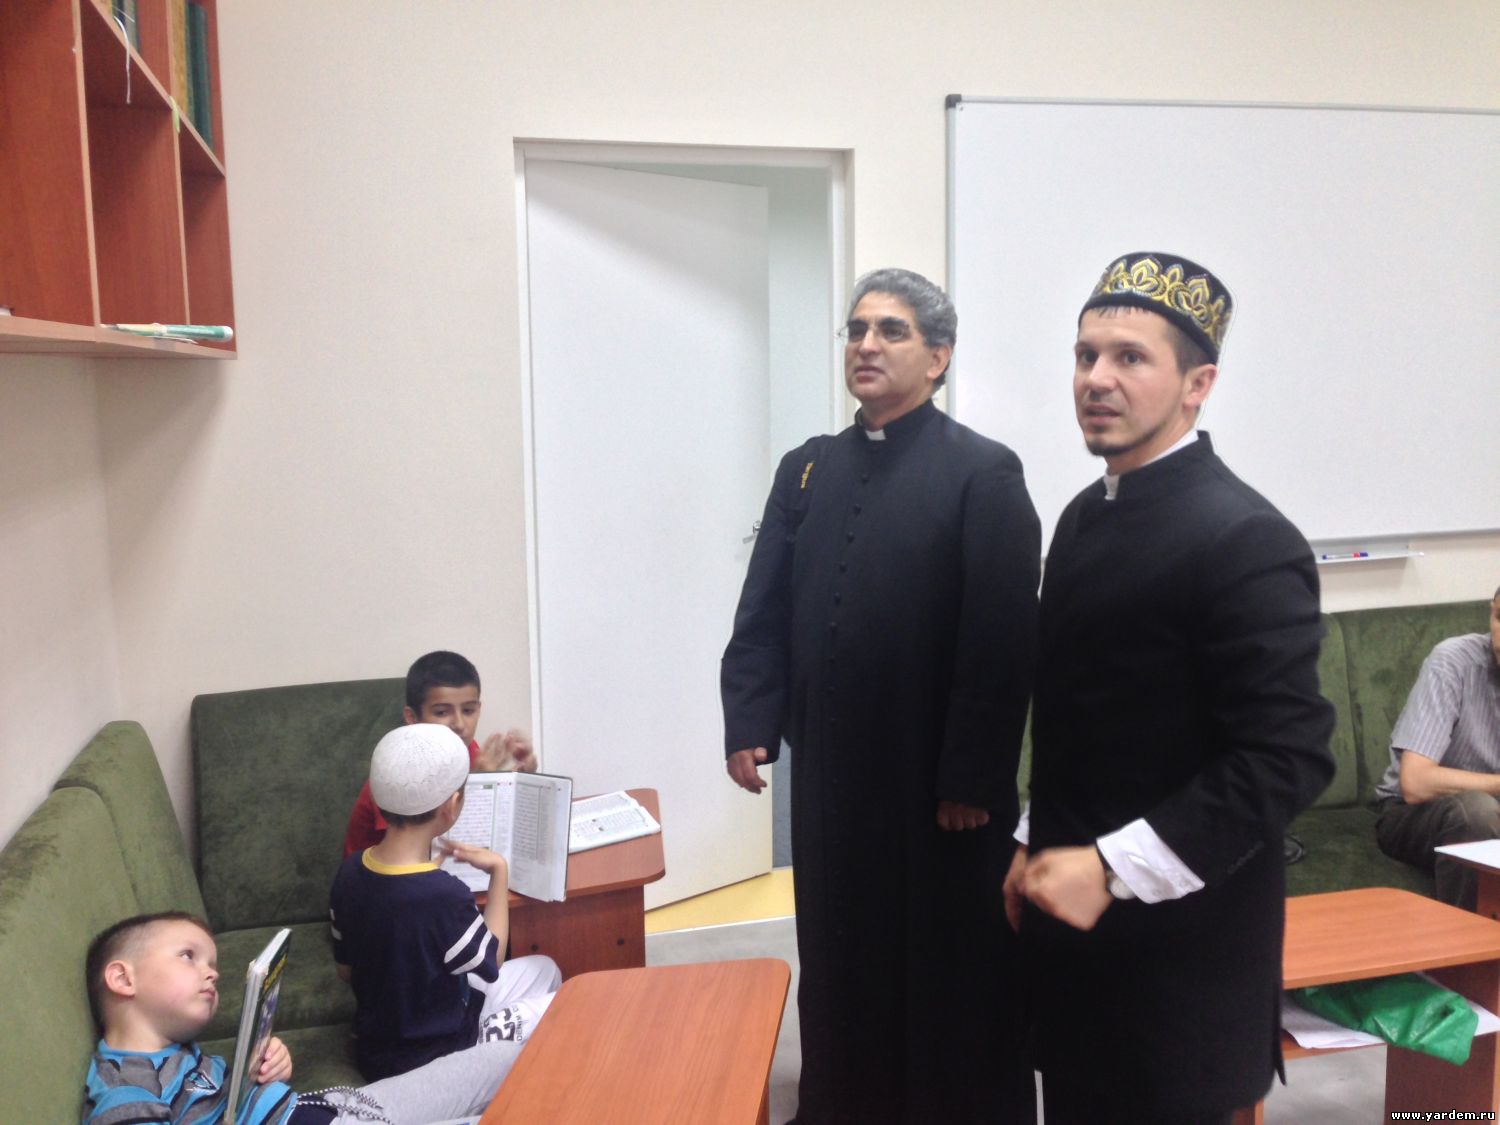 Настоятель католического храма  Диогенез Уркиза посетил мечеть "Ярдэм". Общие новости